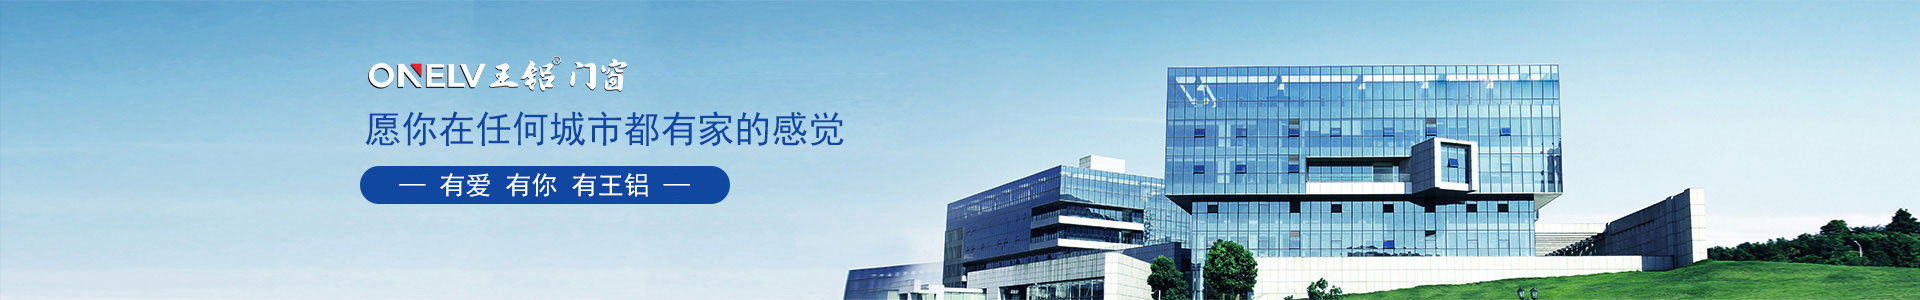 长沙国际金融中心-工程案例-广东王铝铝业有限公司【企业官网】